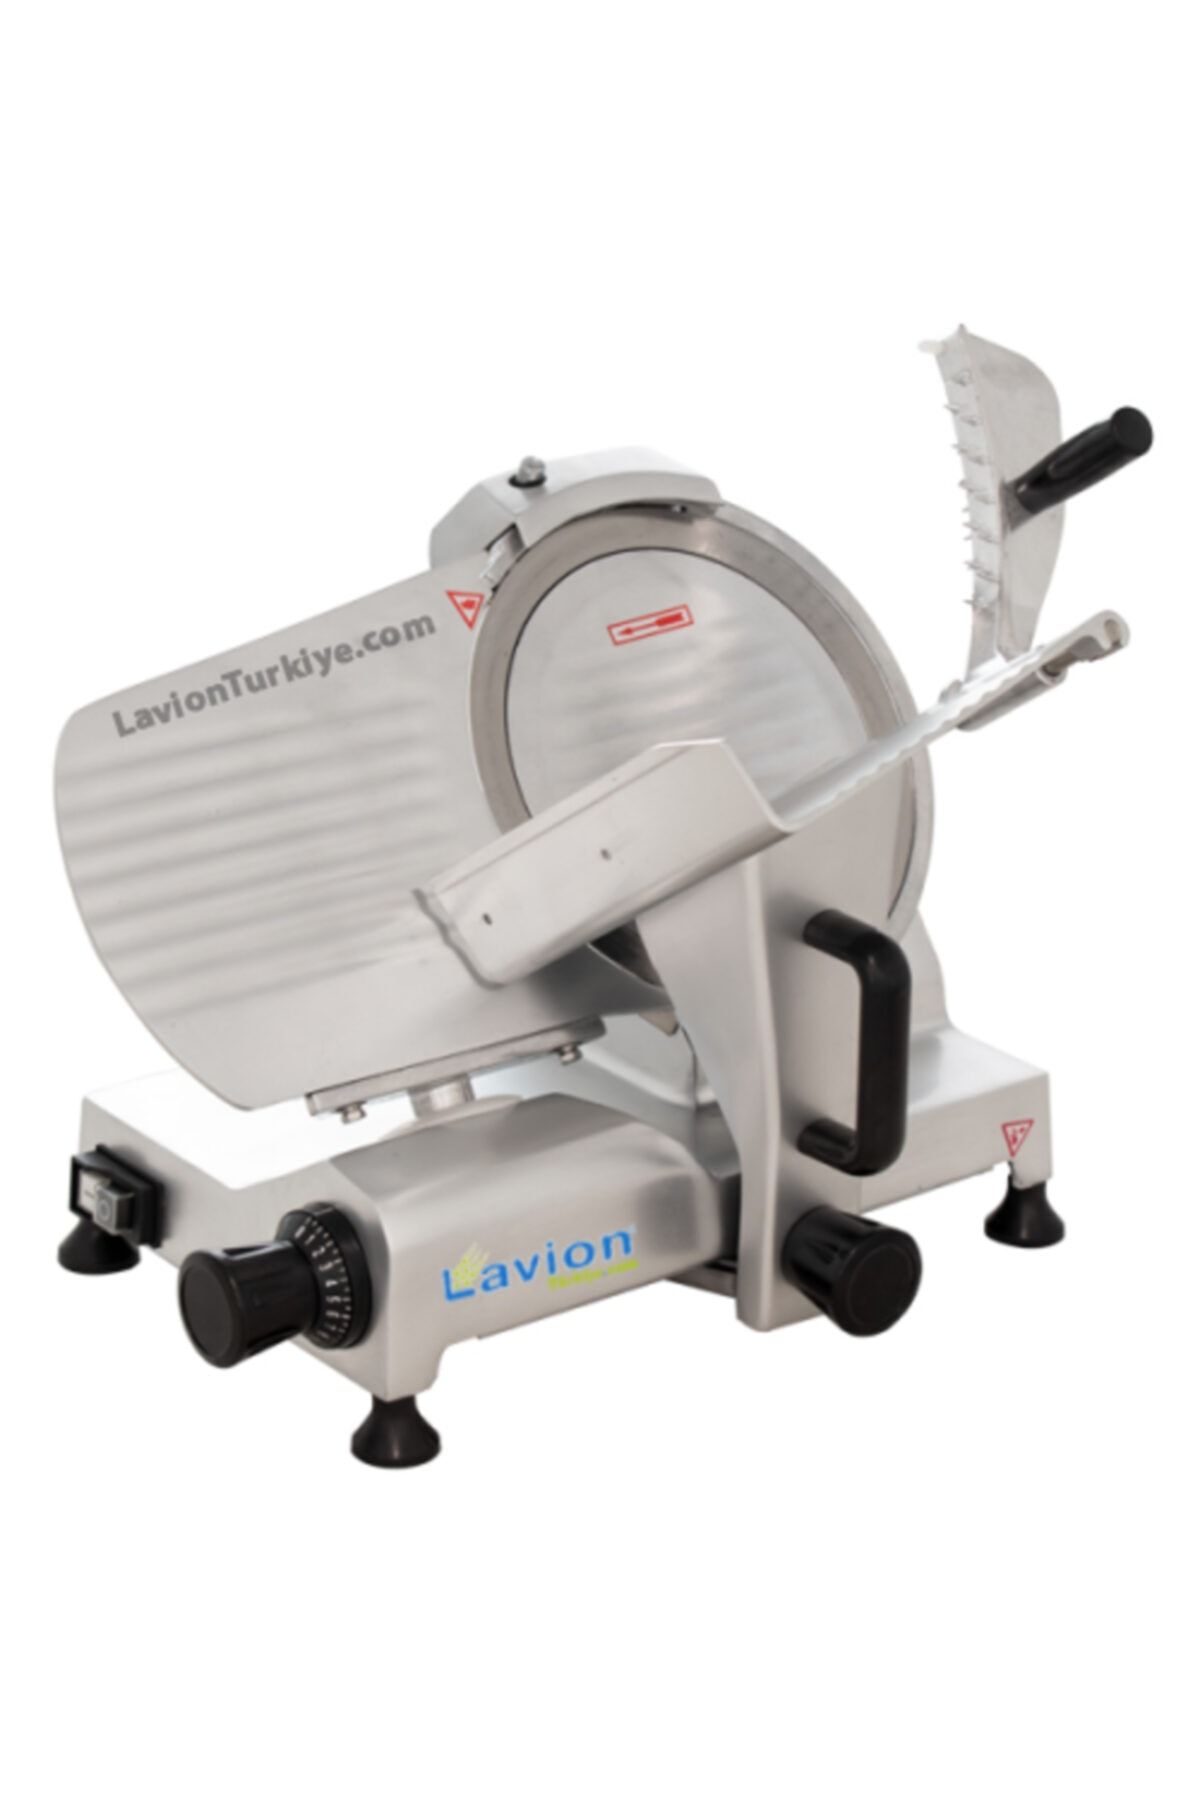 LavionDemsan Lavion Hbs 25 cm Salam Kaşar Dilimleme Makinası - Dilimleme Makineleri